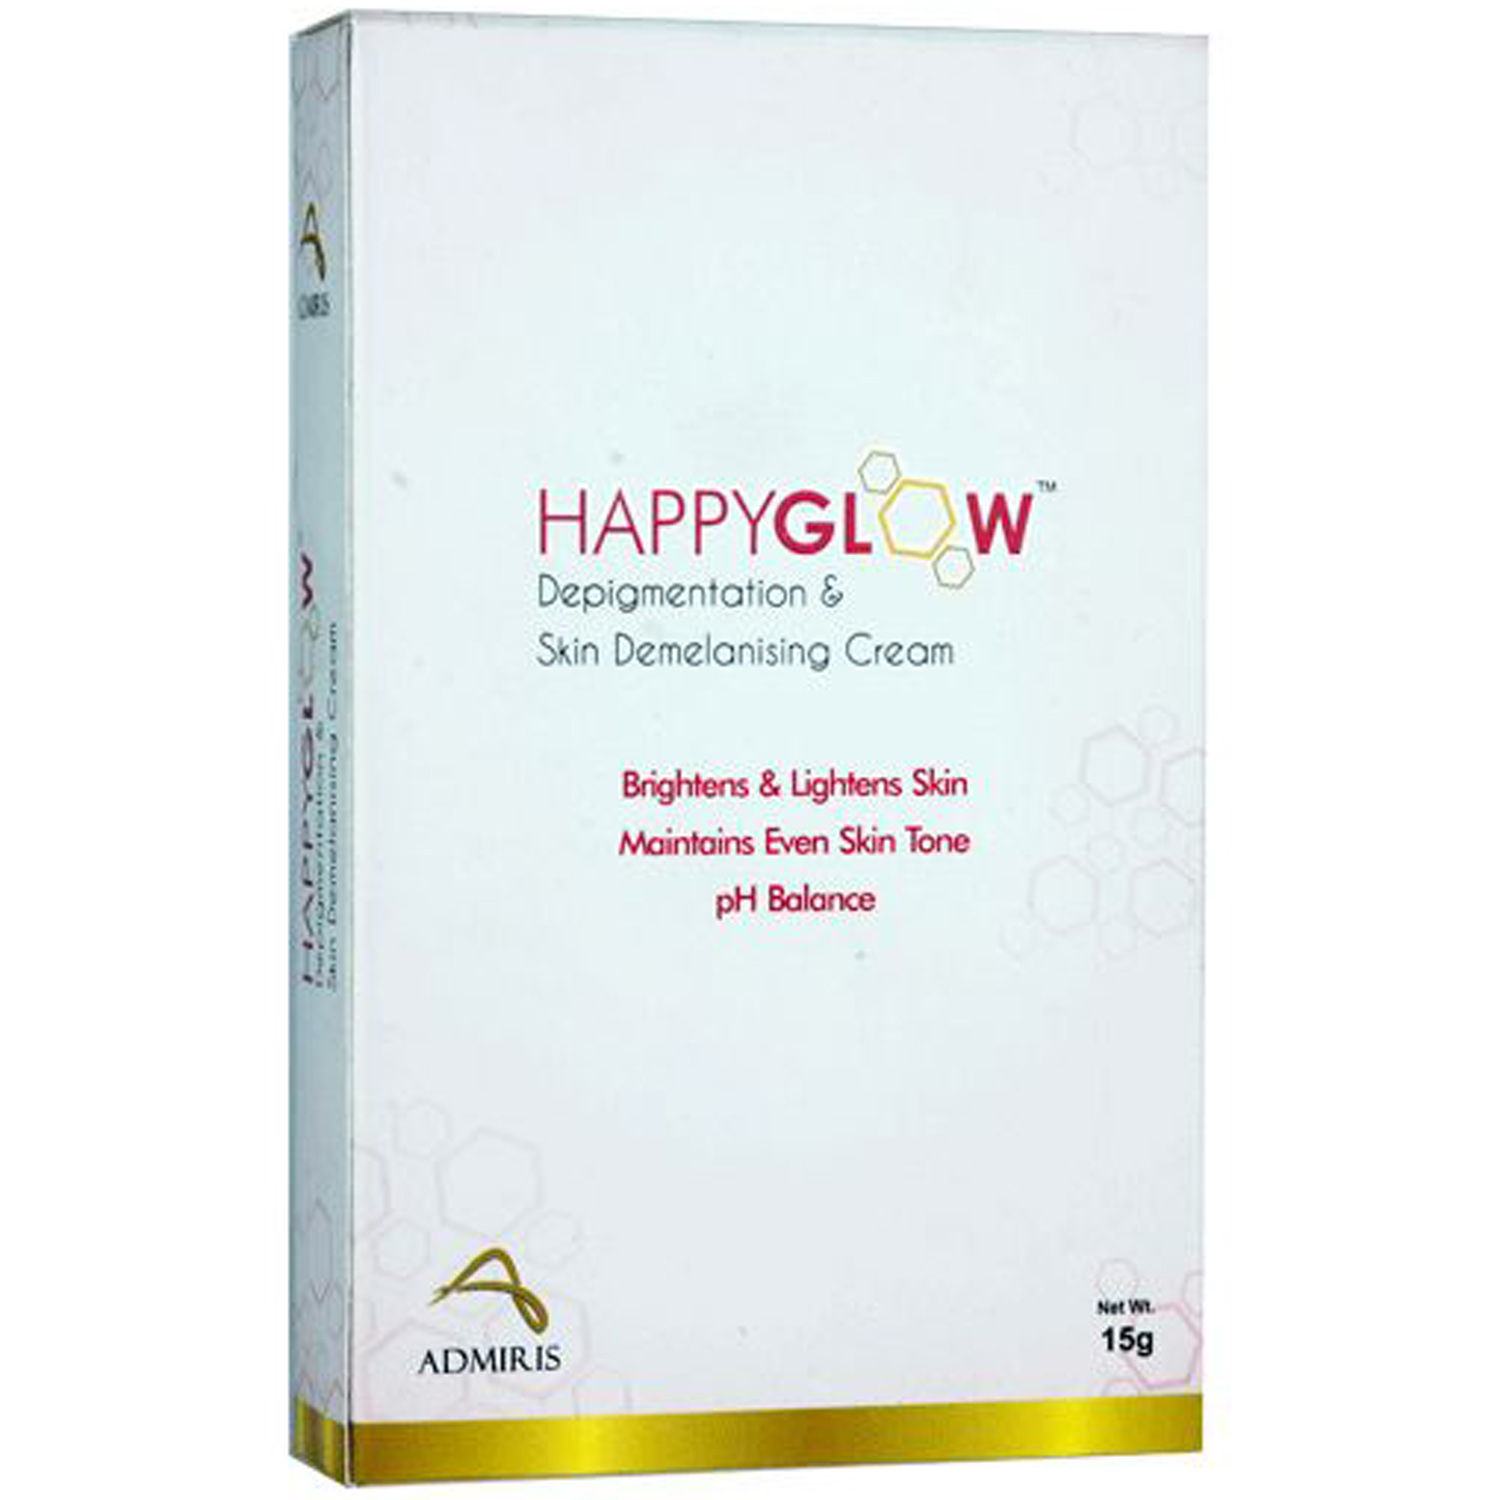 Buy Happyglow Cream, 15 gm Online